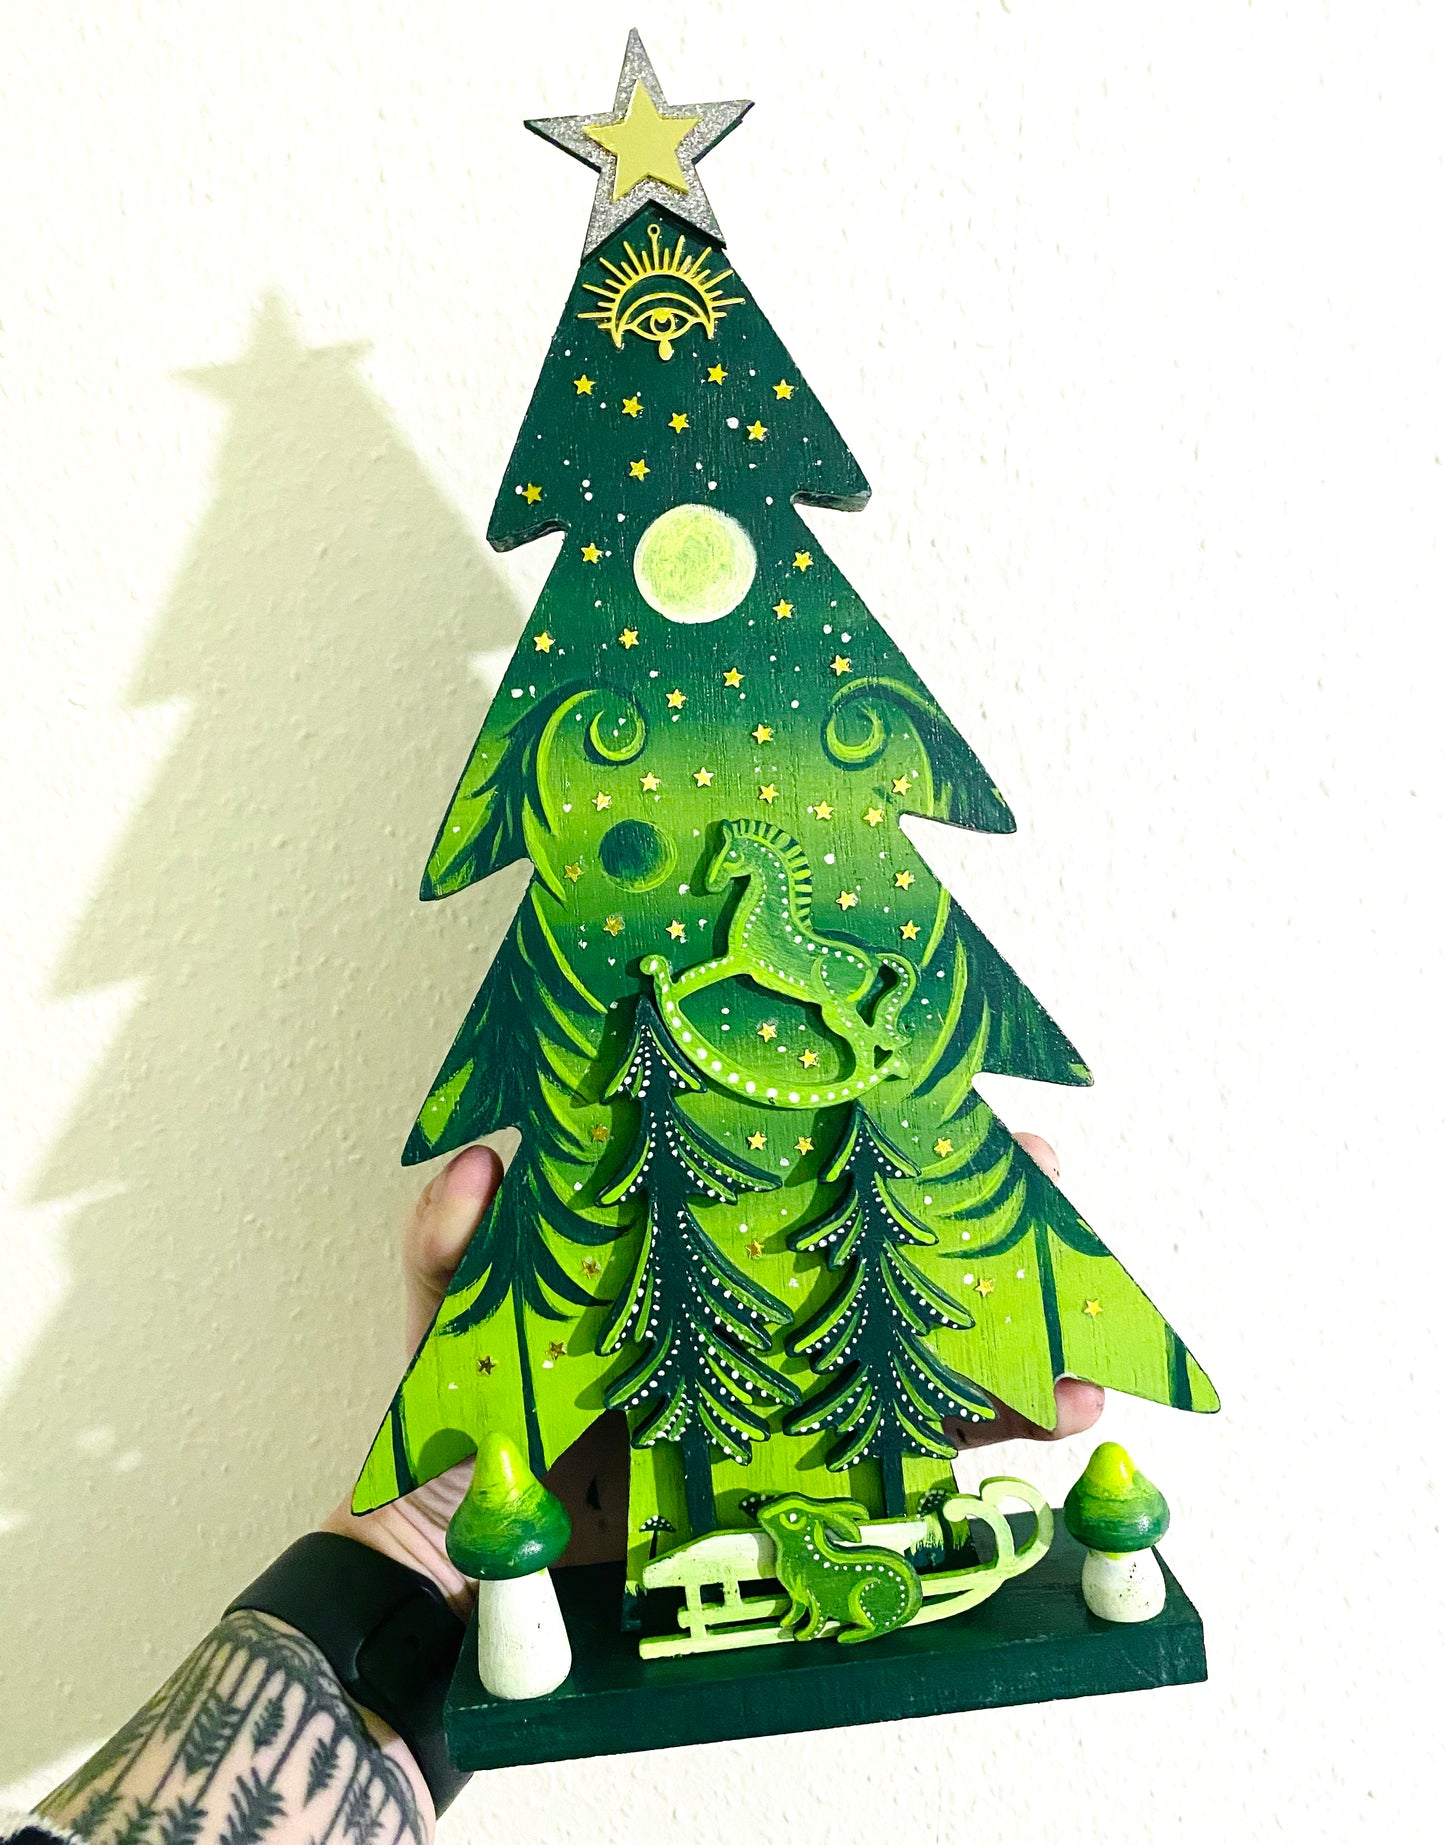 Hand-painted pine tree figurine LARGER (embellished) / Kézzel festett fenyőfigura NAGYOBB (díszített)